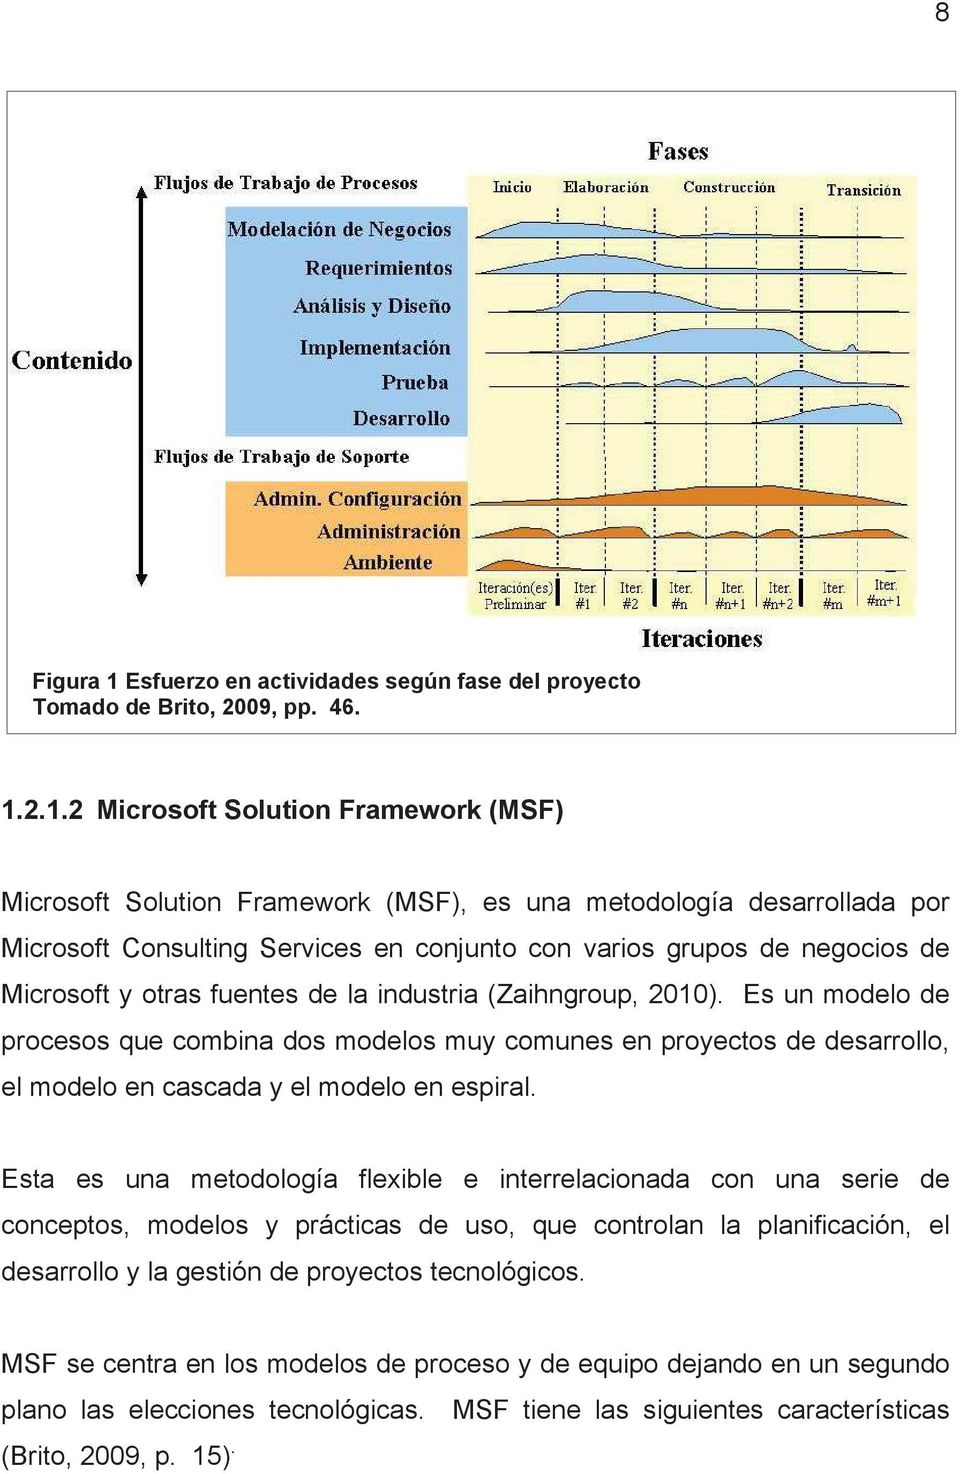 2.1.2 Microsoft Solution Framework (MSF) Microsoft Solution Framework (MSF), es una metodología desarrollada por Microsoft Consulting Services en conjunto con varios grupos de negocios de Microsoft y